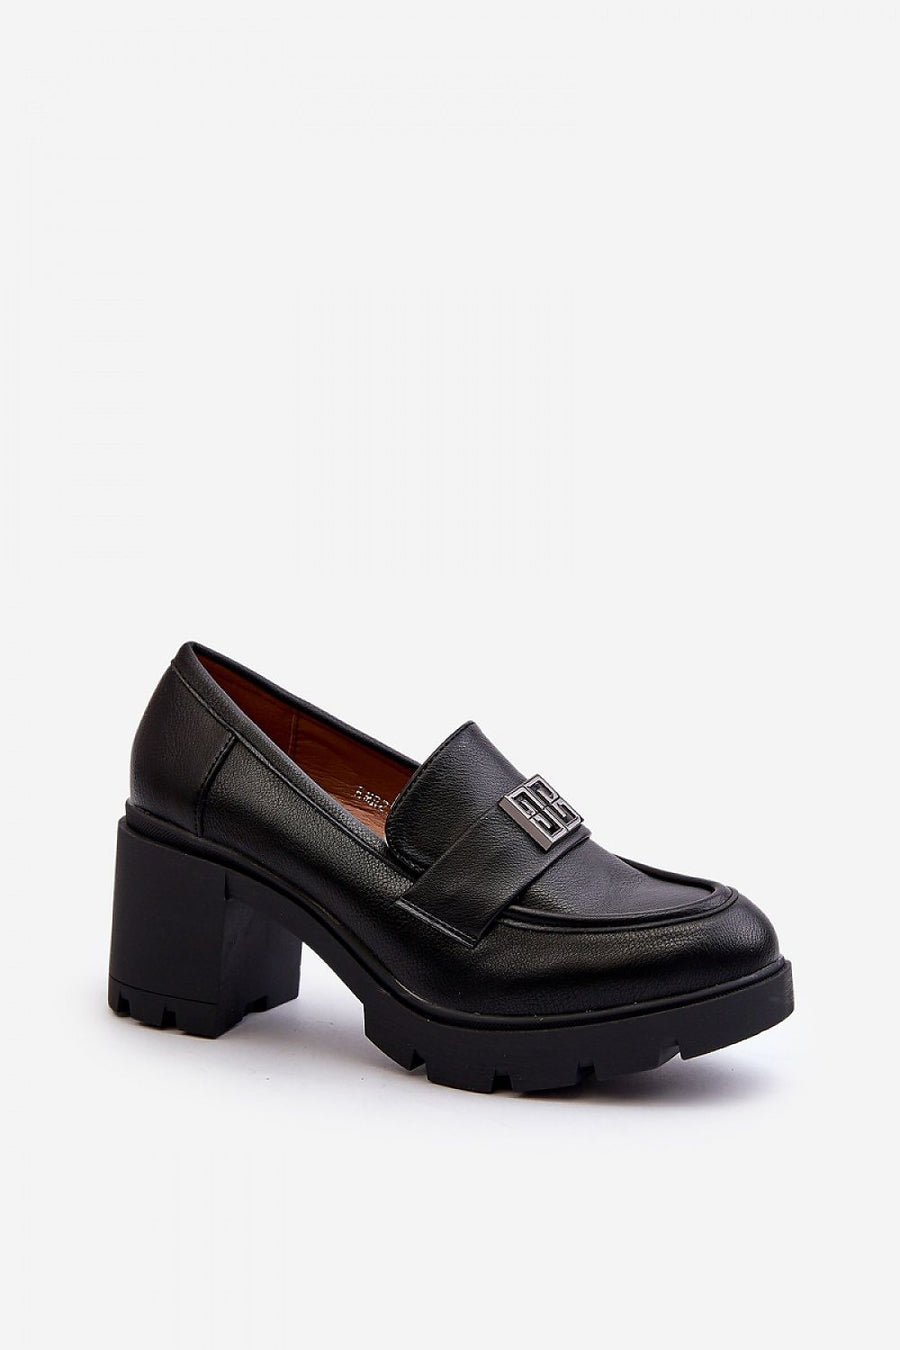 Schuhe mit Absatz Model 195403 Step in style